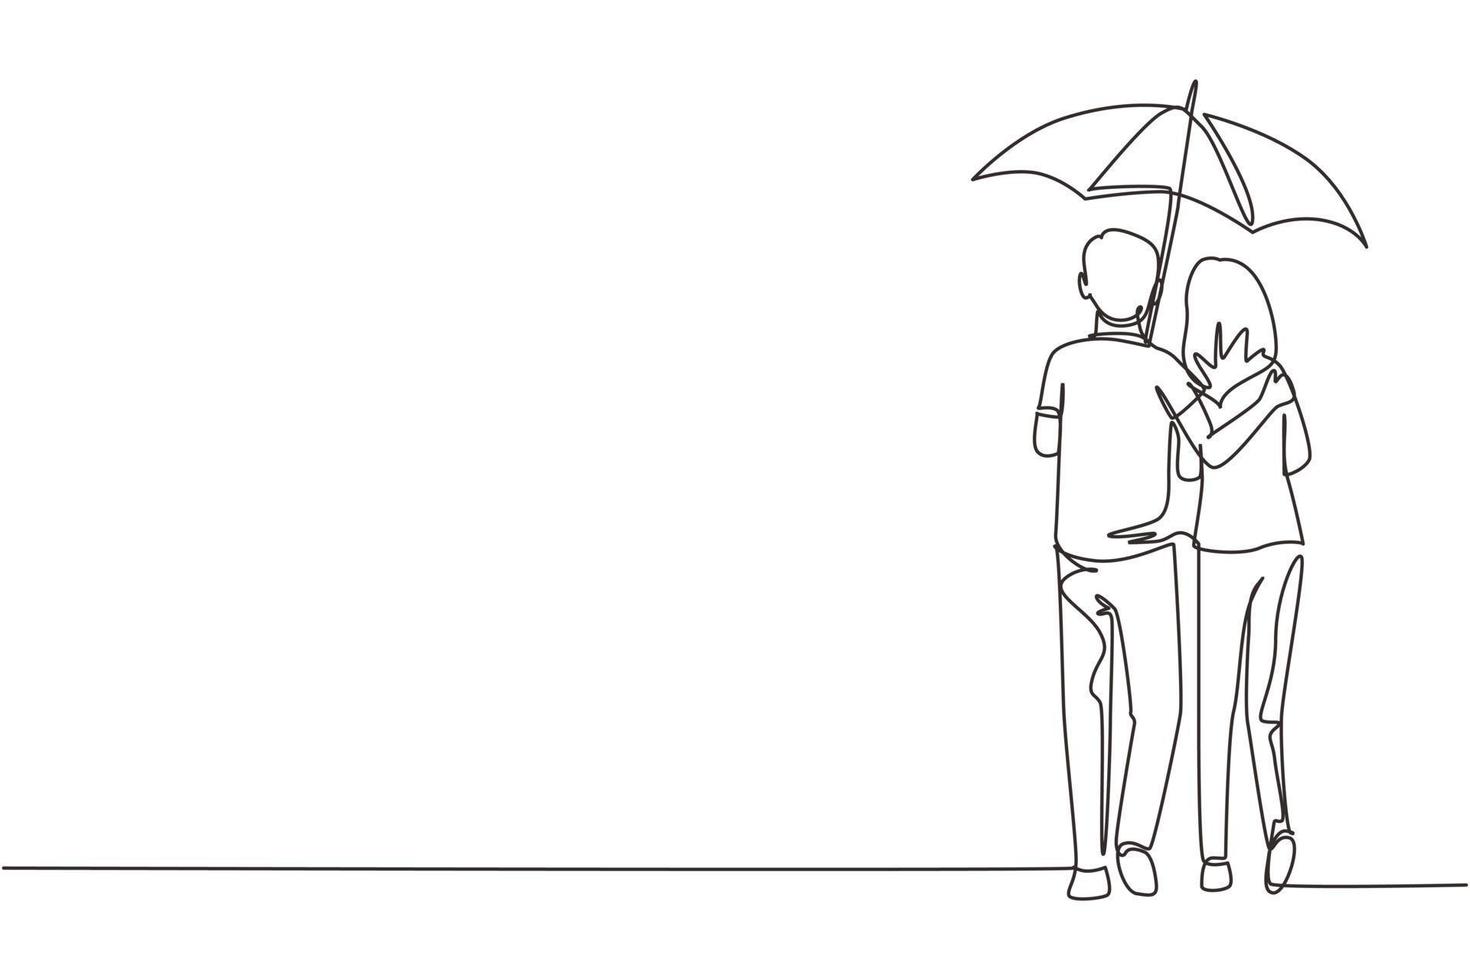 kontinuerlig en rad ritning bakifrån älskare par i regn. förälskade par går under regn med paraply. glad man och kvinna går längs stadsgatan. en rad rita design vektorgrafik vektor